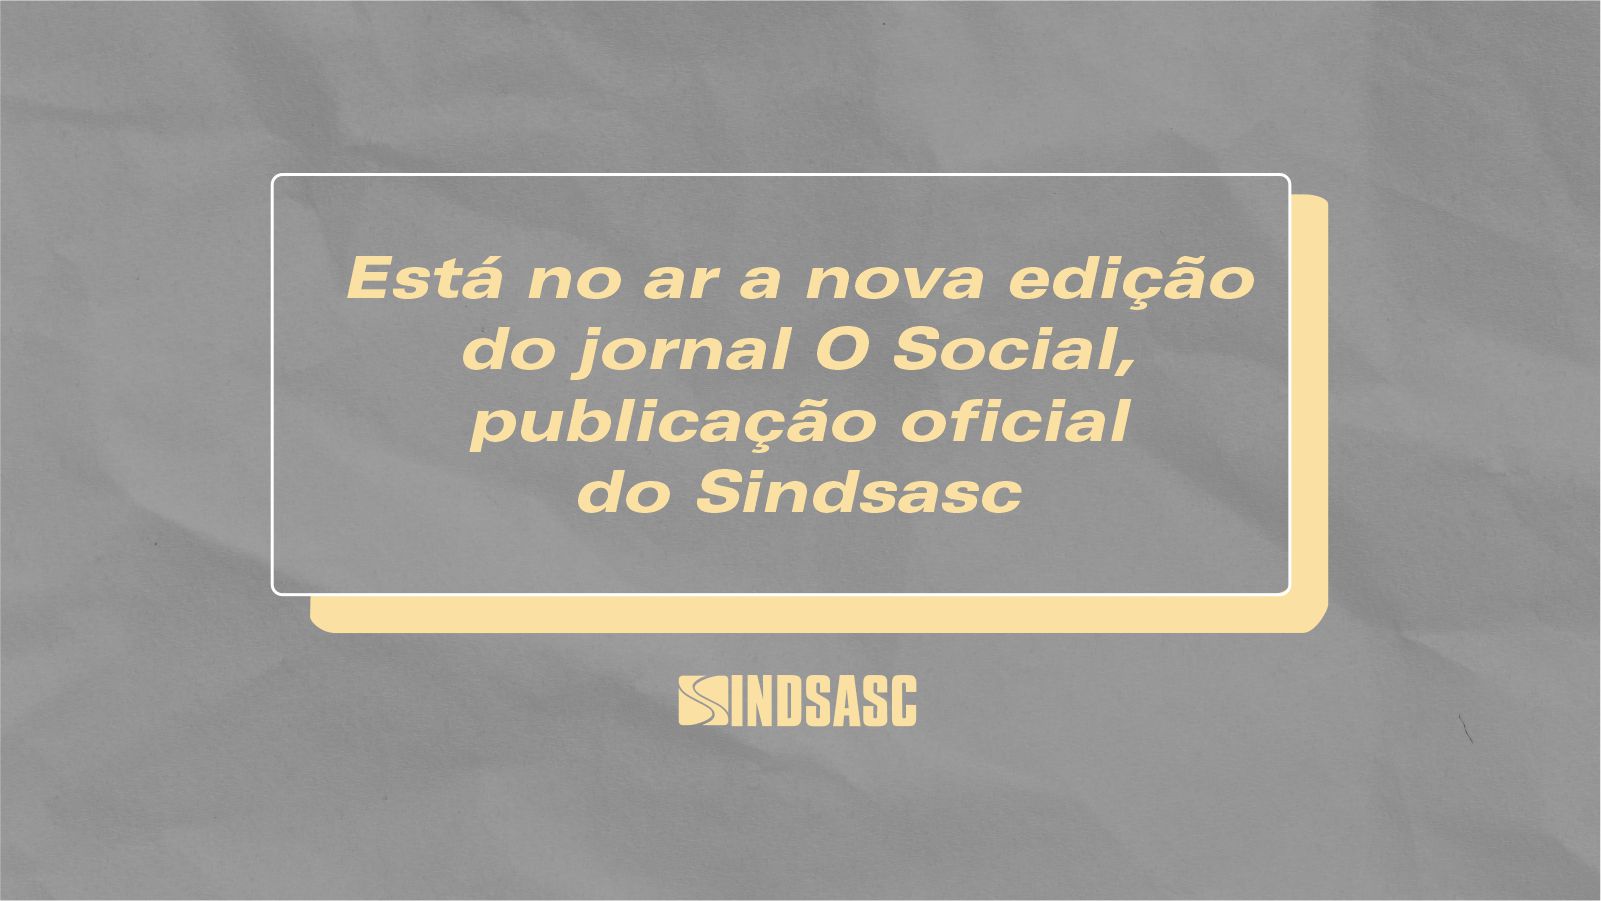 Está no ar a nova edição do jornal O Social, publicação oficial do Sindsasc